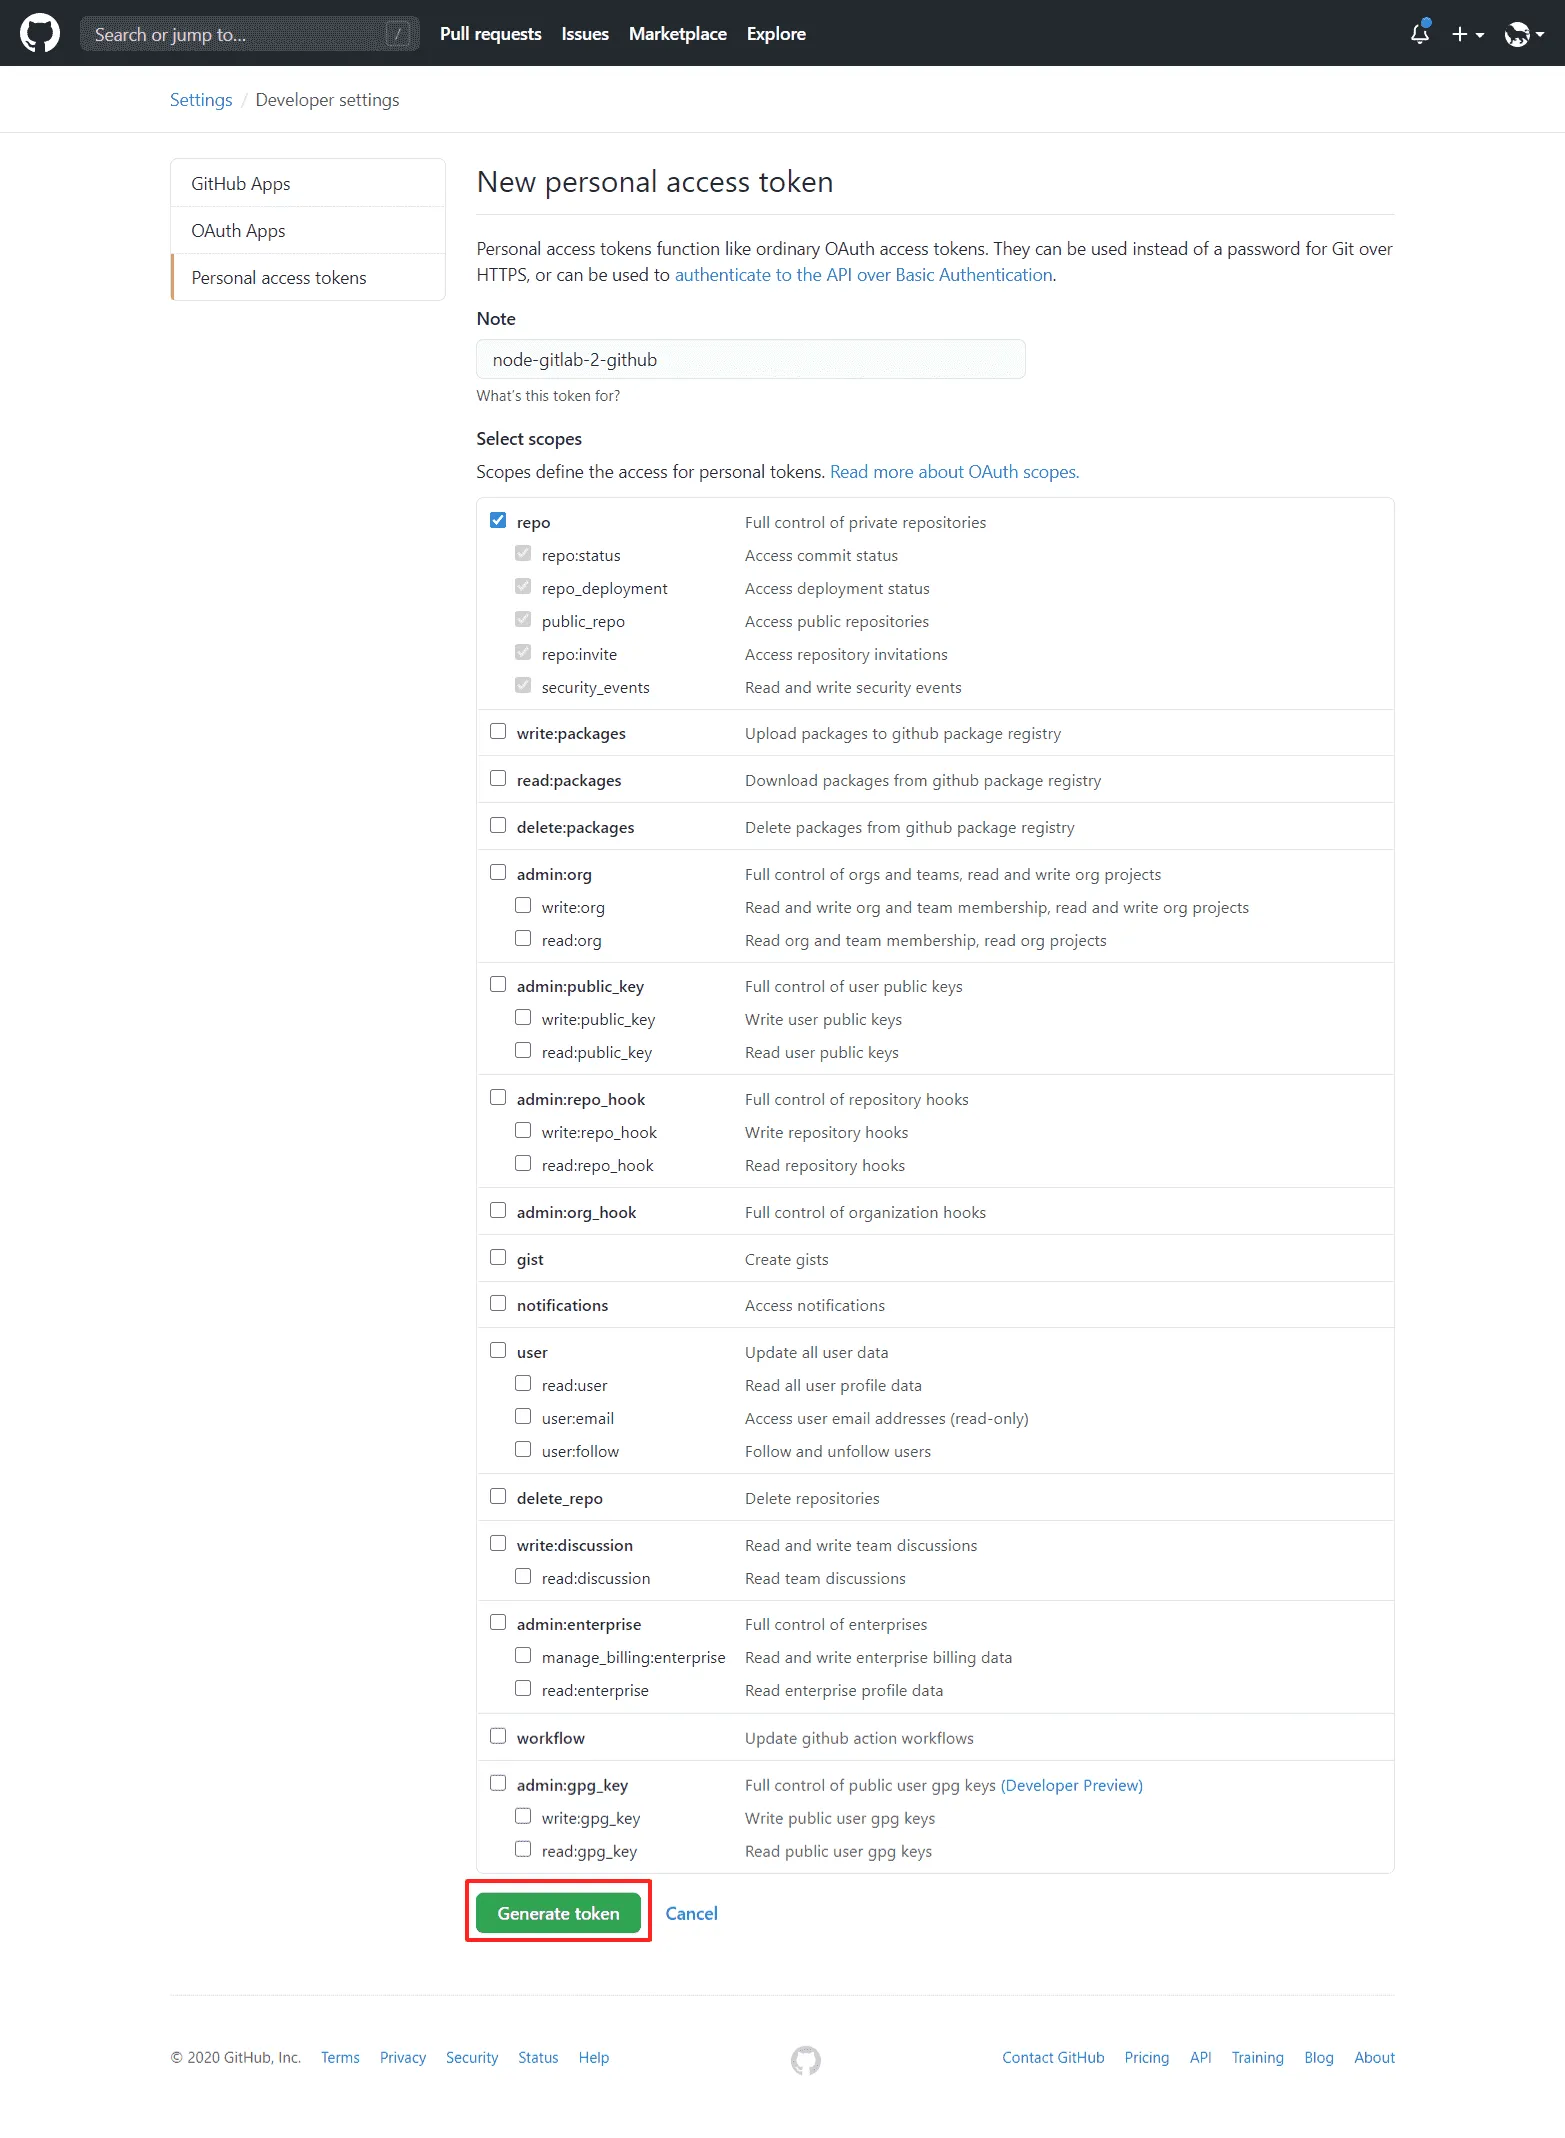 GitHubでのアクセストークン設定画面